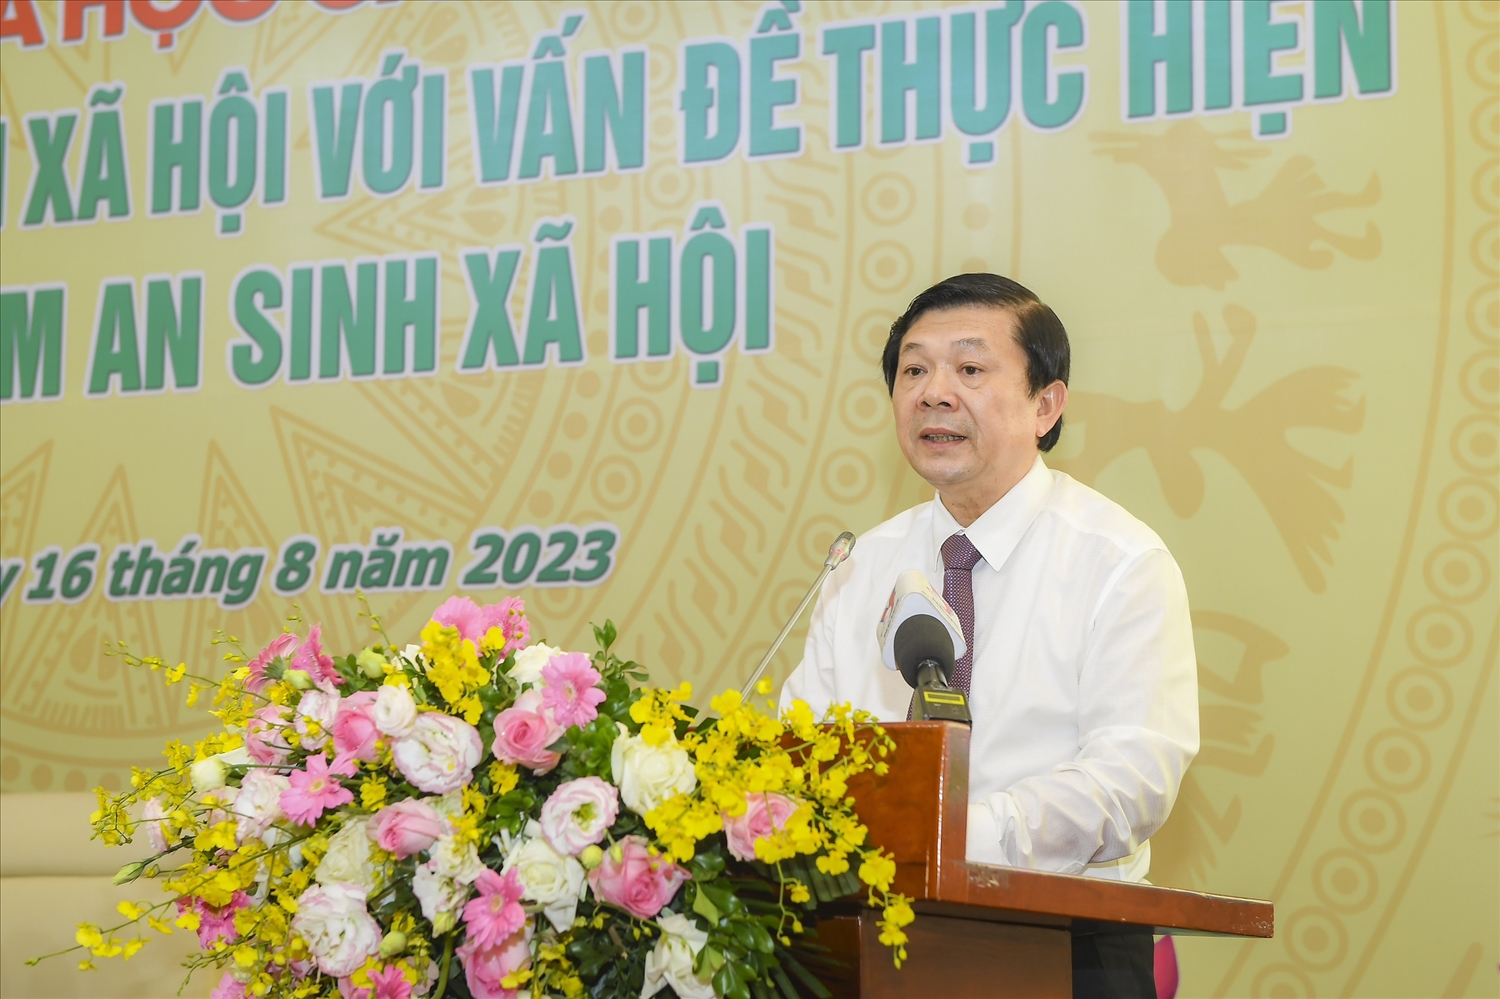 Phó Chủ tịch Ủy ban Trung ương MTTQ Việt Nam Nguyễn Hữu Dũng phát biểu tại Hội thảokhoa học cấp quốc gia “Tín dụng chính sách xã hội với vấn đề thực hiện và bảo đảm an sinh xã hội” vừa qua.